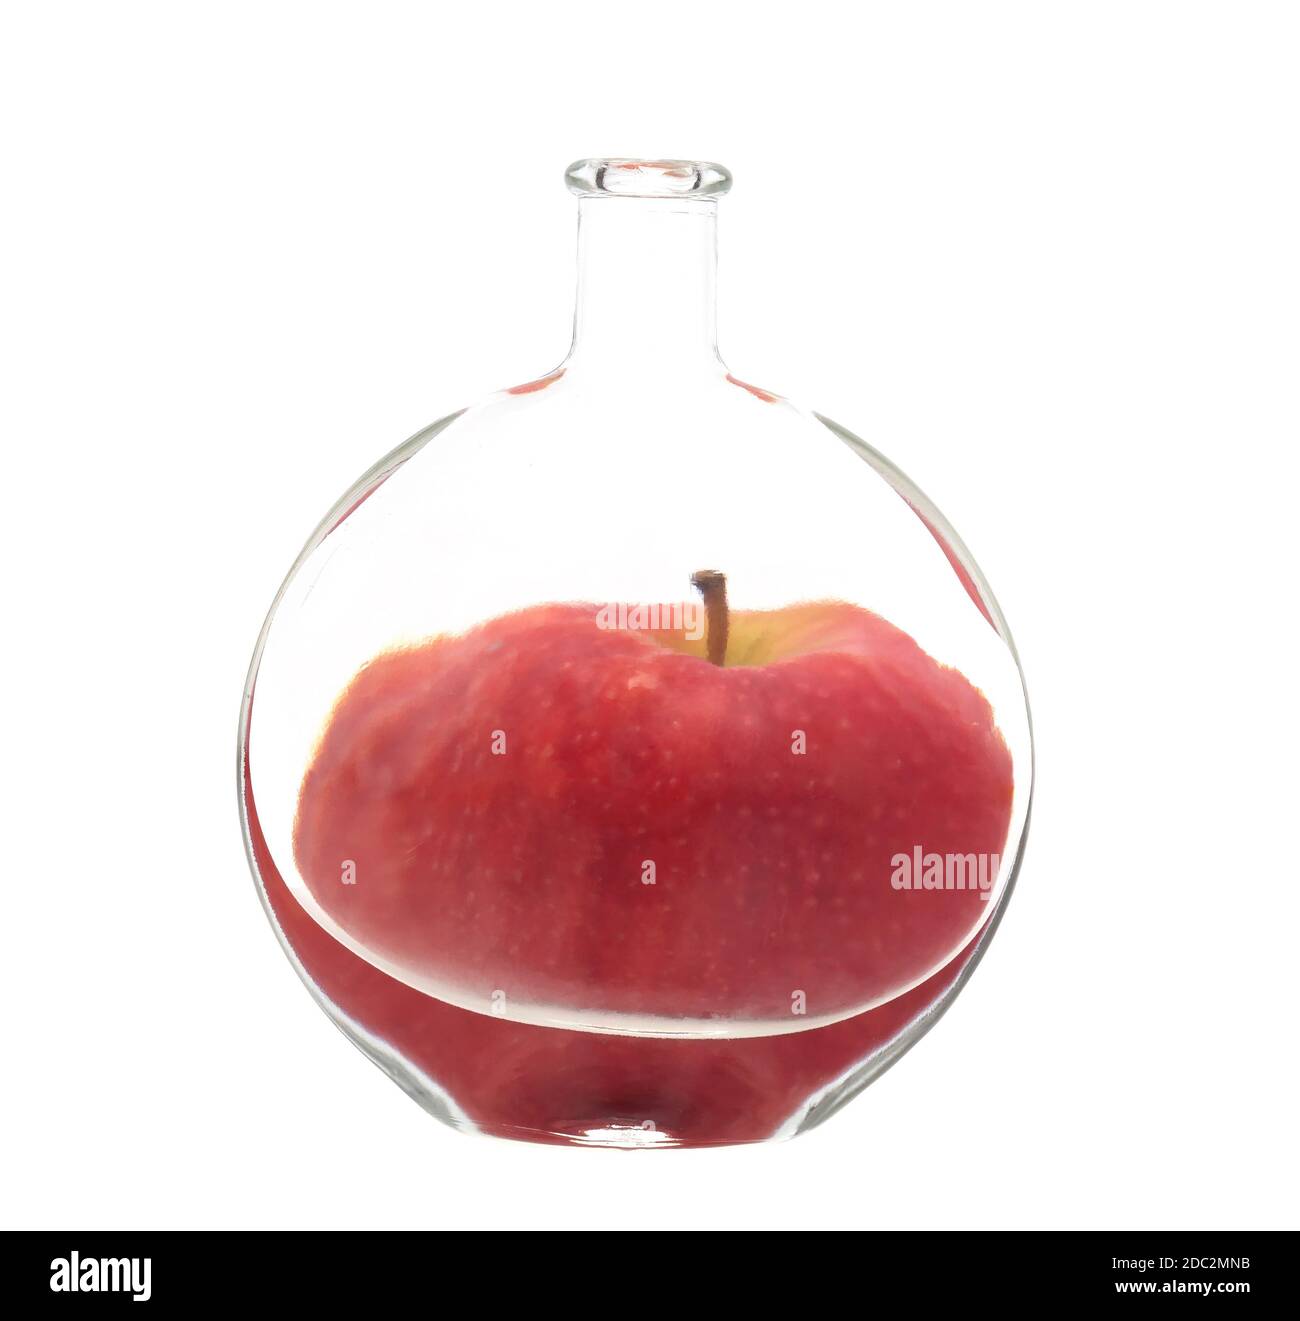 Flasche Apfel. Verzerrung, Brechung durch Wasser Konzept, konzeptionell. Stockfoto